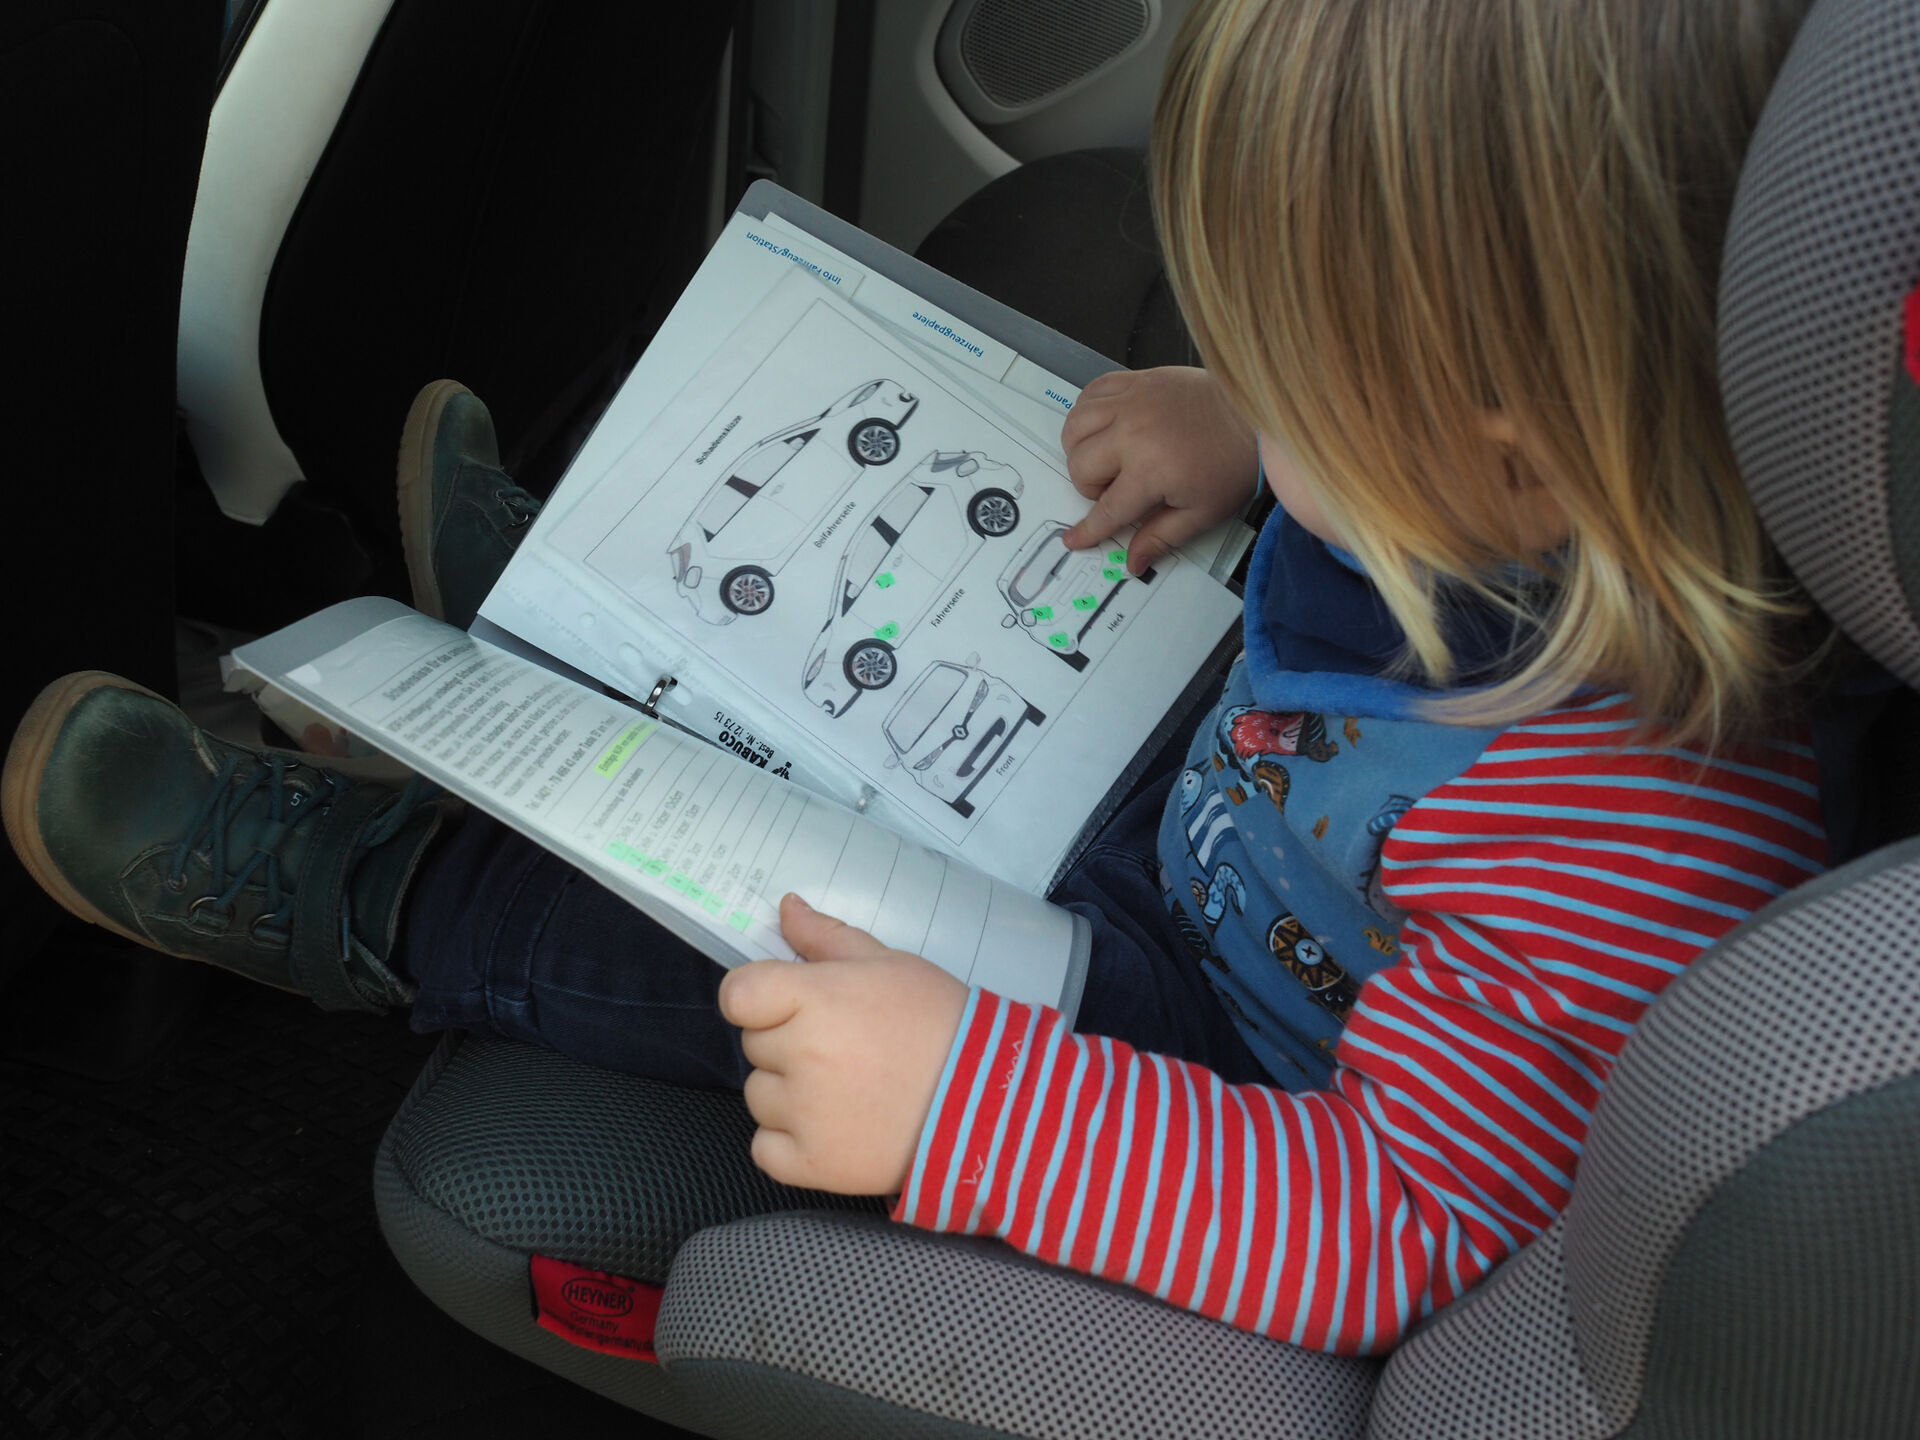 Ein Kind im Kindersitz im Auto, man schaut auf den Schoß. Darin liegt das Bordbuch, welches das Kind interessiert anschaut.